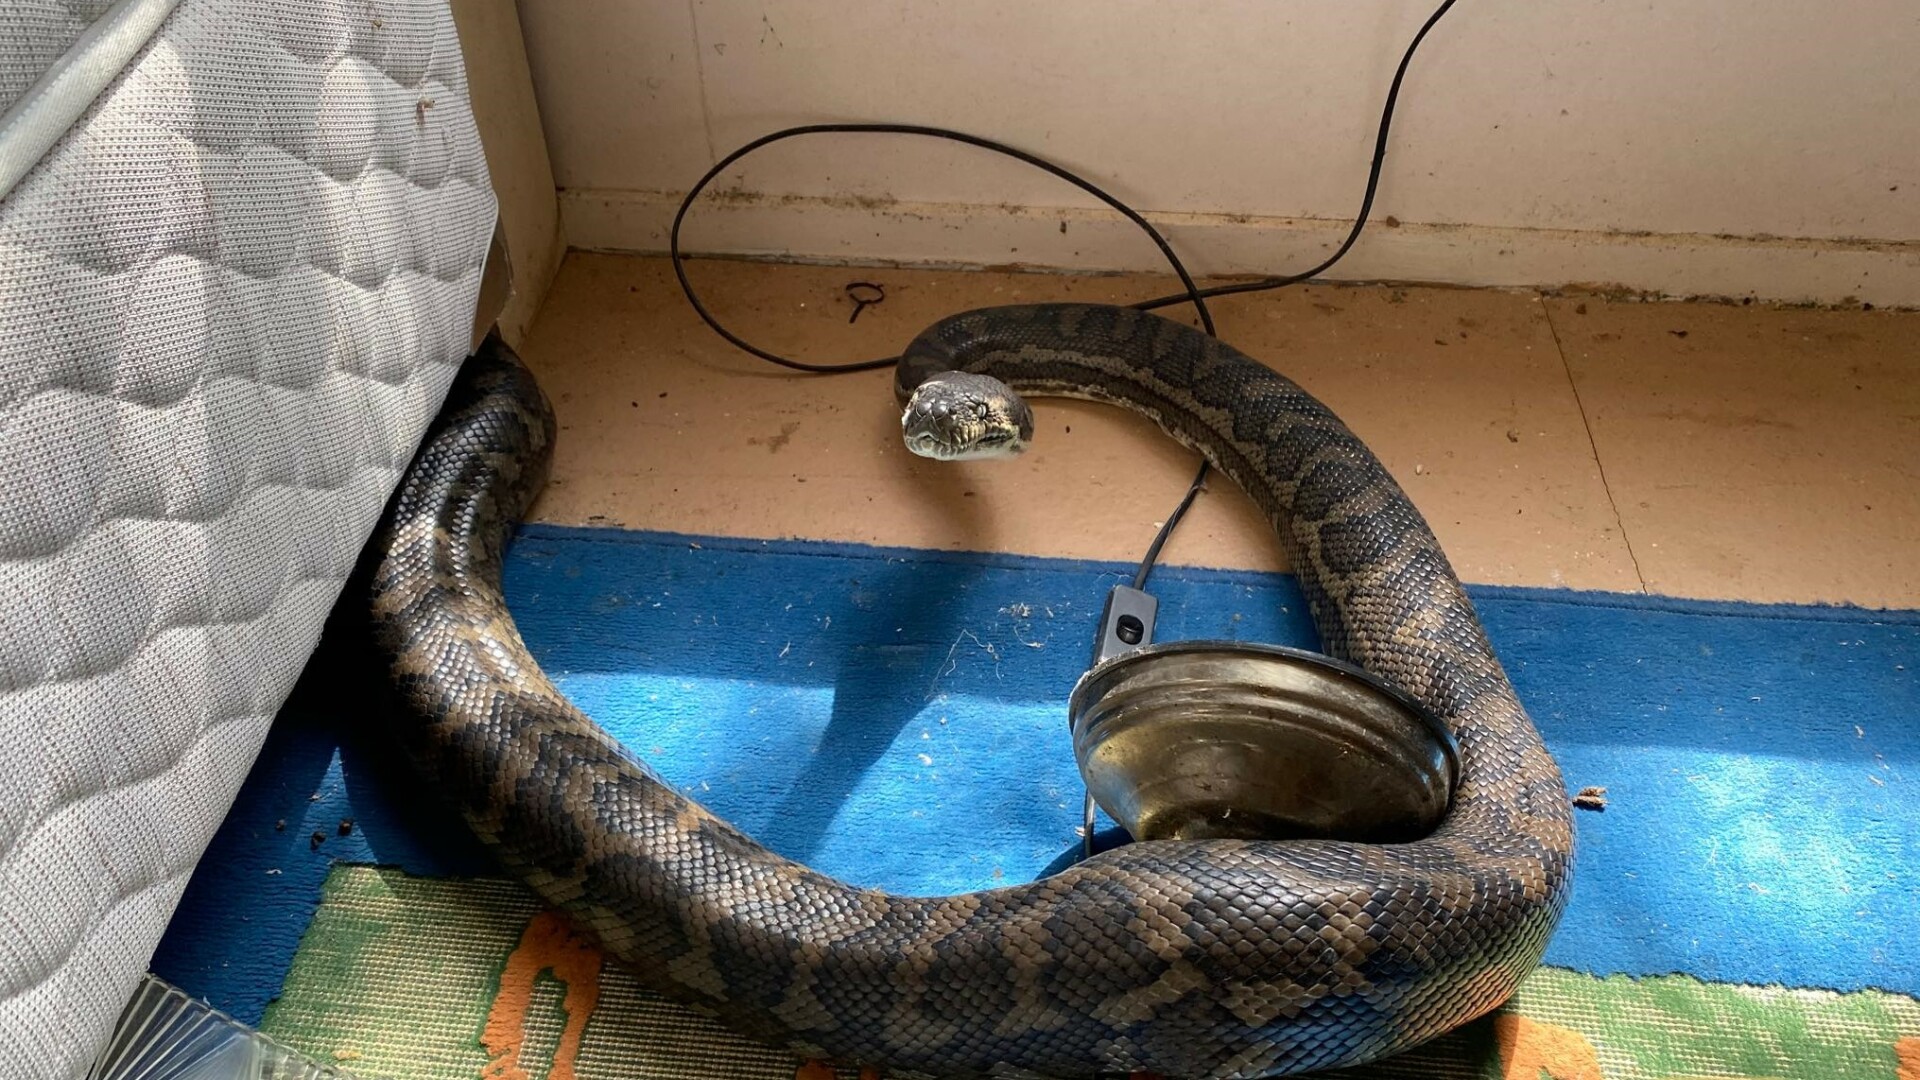 Descoperire de coșmar. Trei șerpi uriași i-au distrus casa după ce tavanul s-a rupt sub greutatea lor